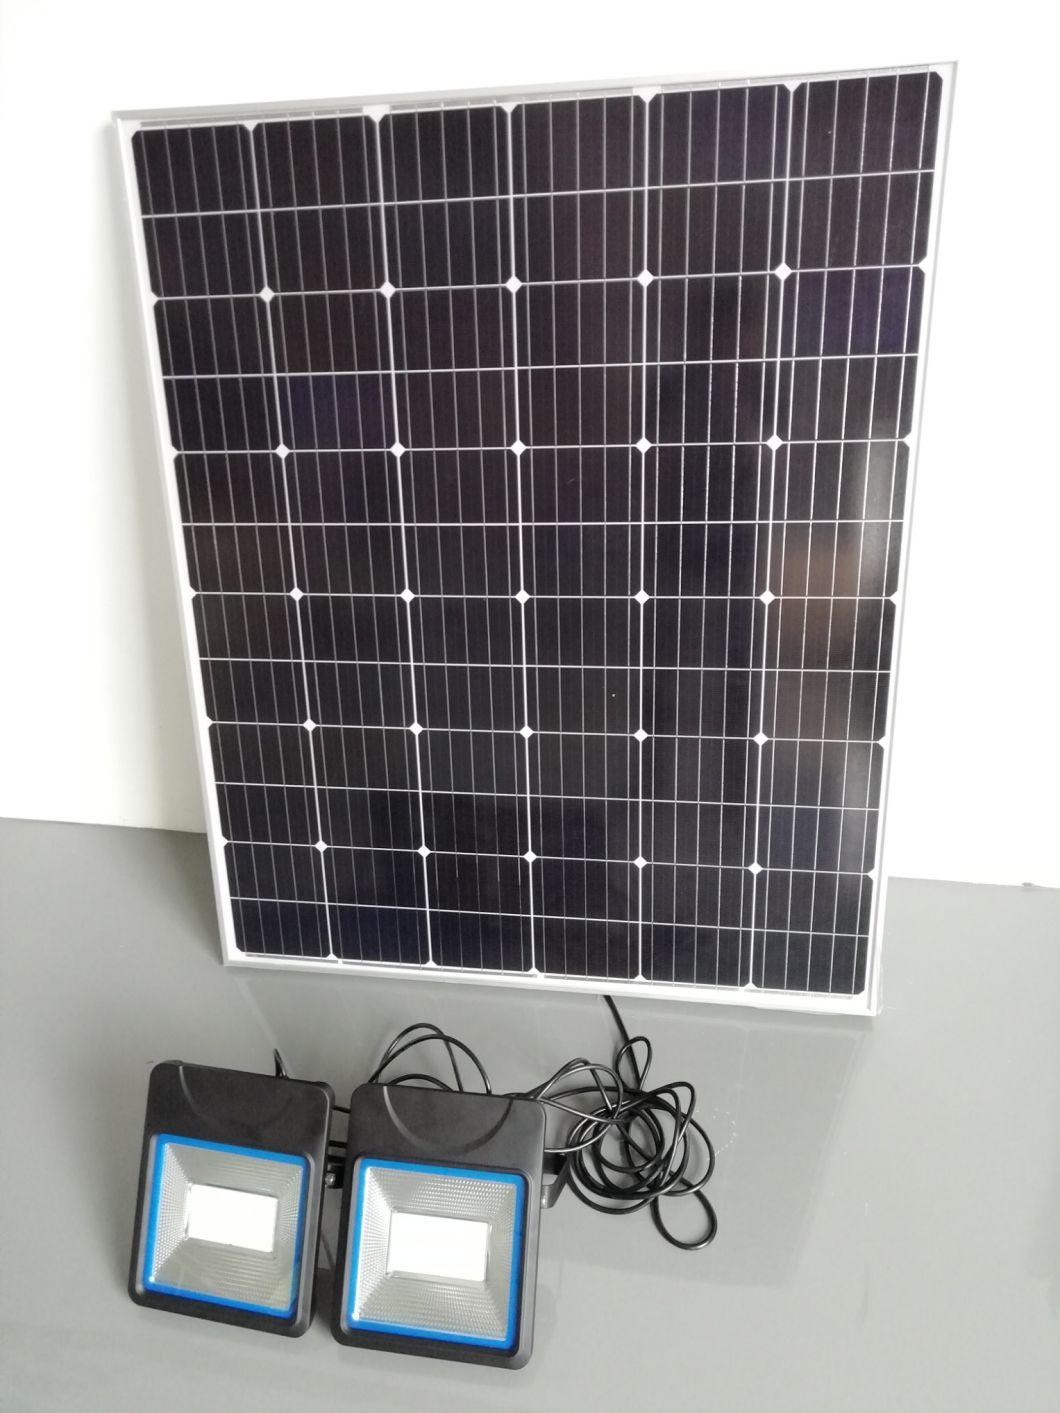 Esavior 100000lm 100W LED Solar Flood Light for Outdoor Parking Lot